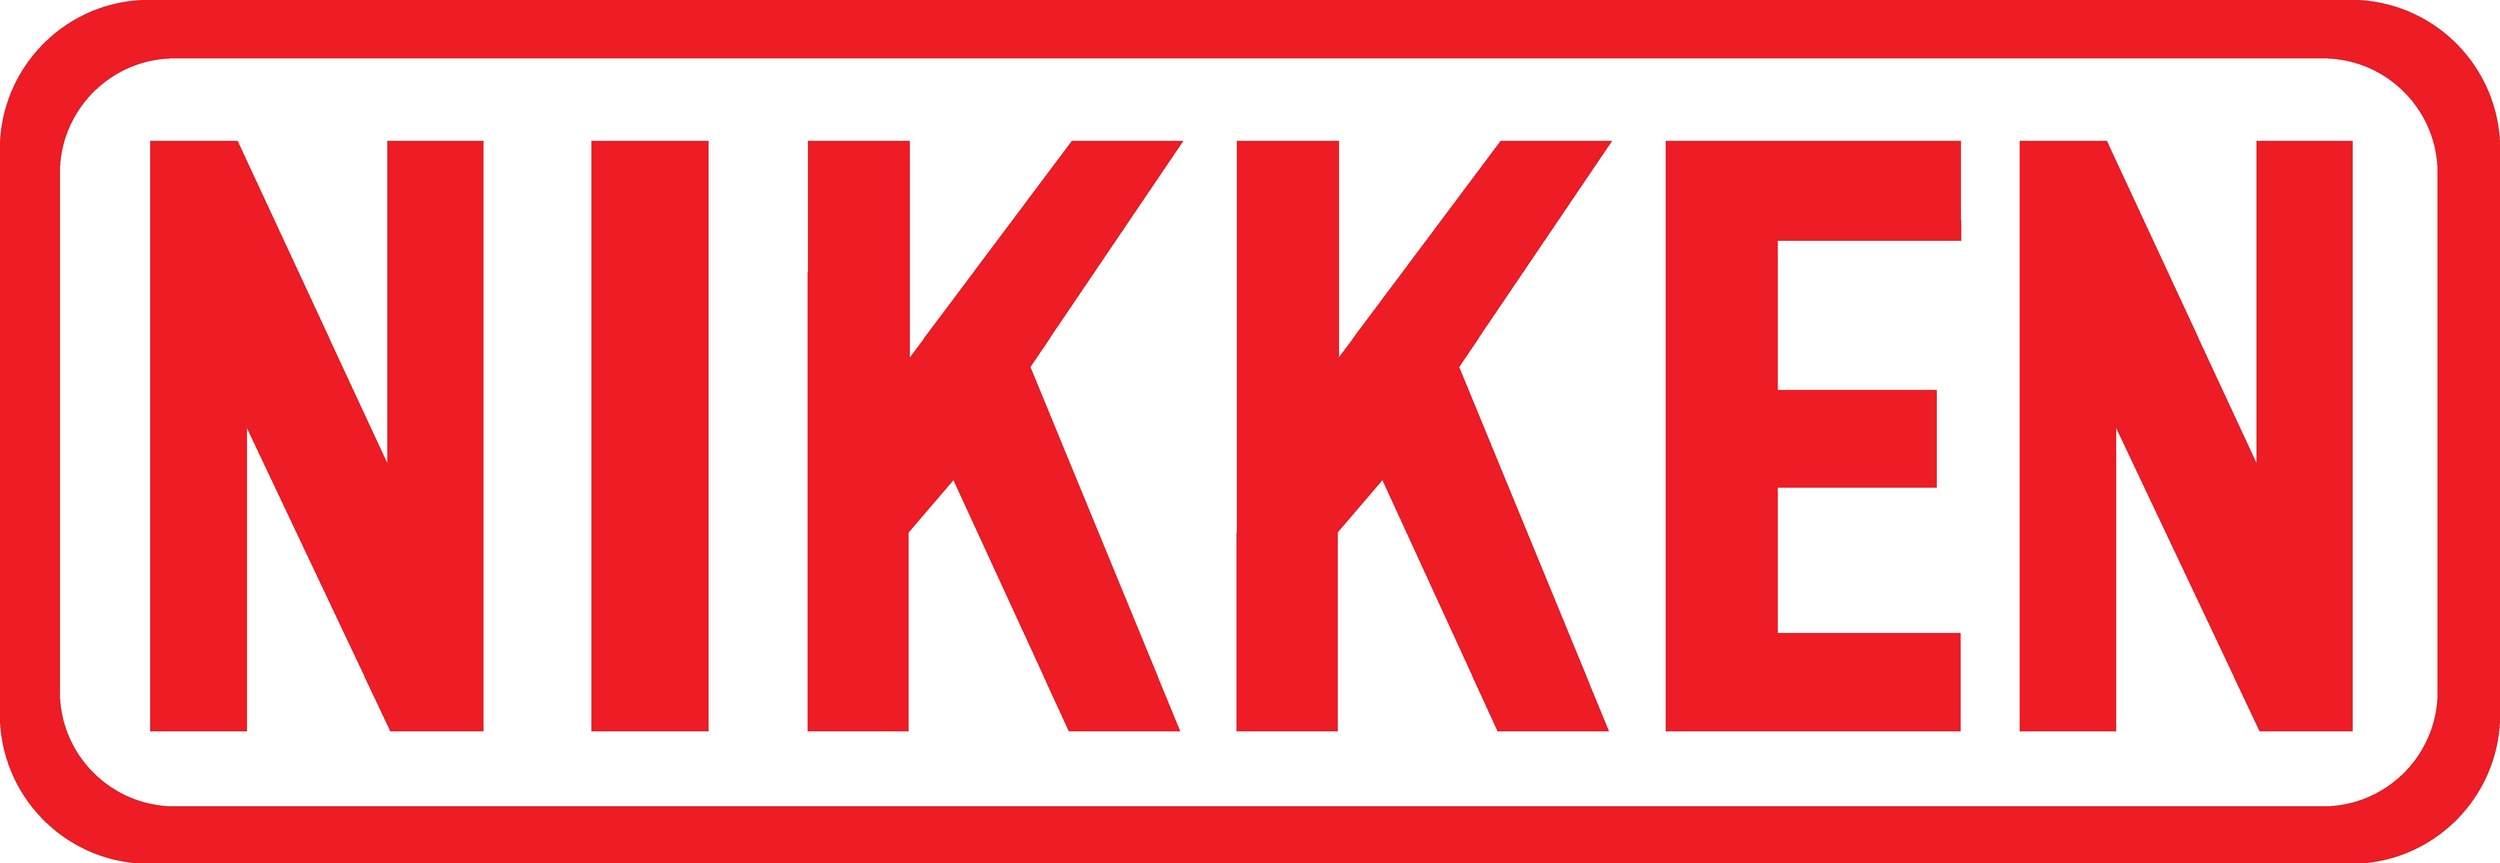 Nikken_logo_100cm.jpg